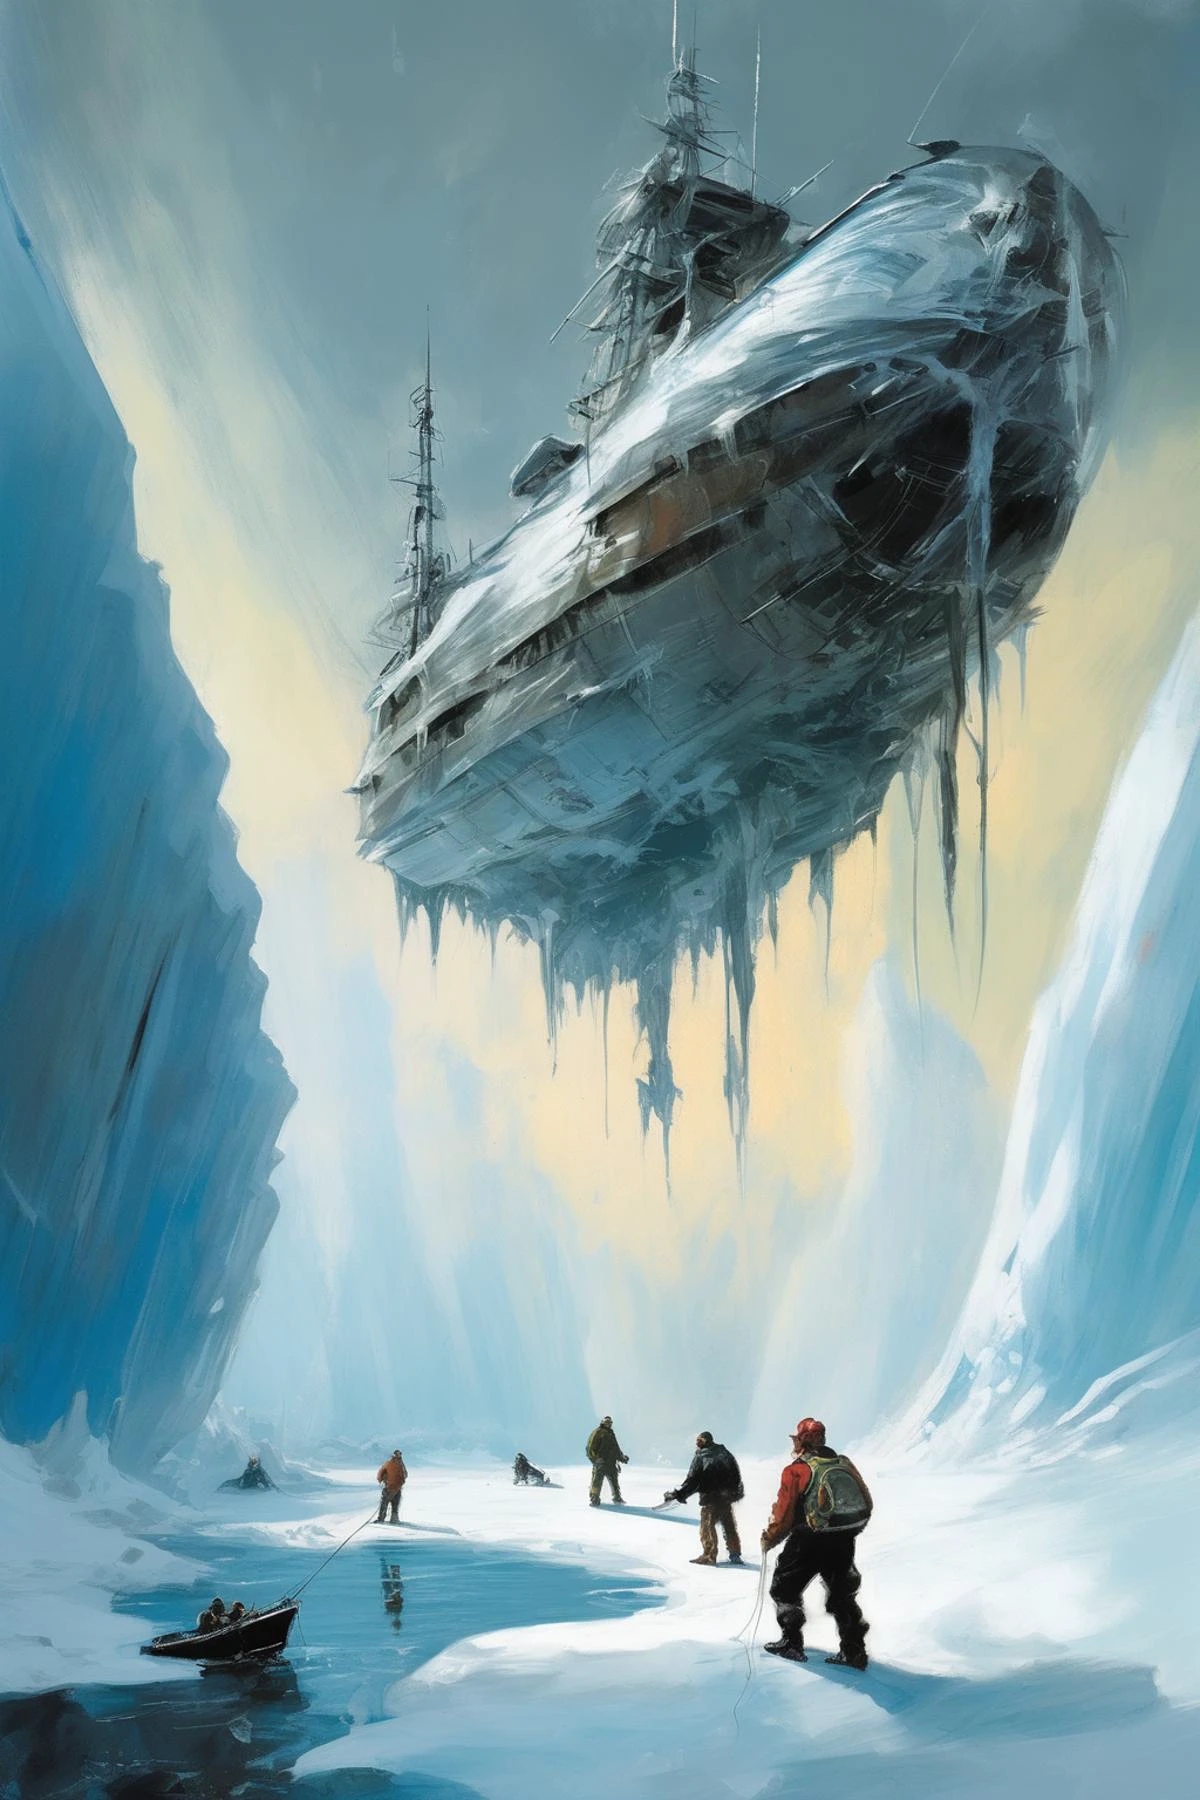 أسلوب جون بيركي - صورة مرسومة باليد لصياد قوي البنية يعثر على سفينة غريبة مجمدة محاصرة في نهر جليدي بأسلوب فني لجون بيركي